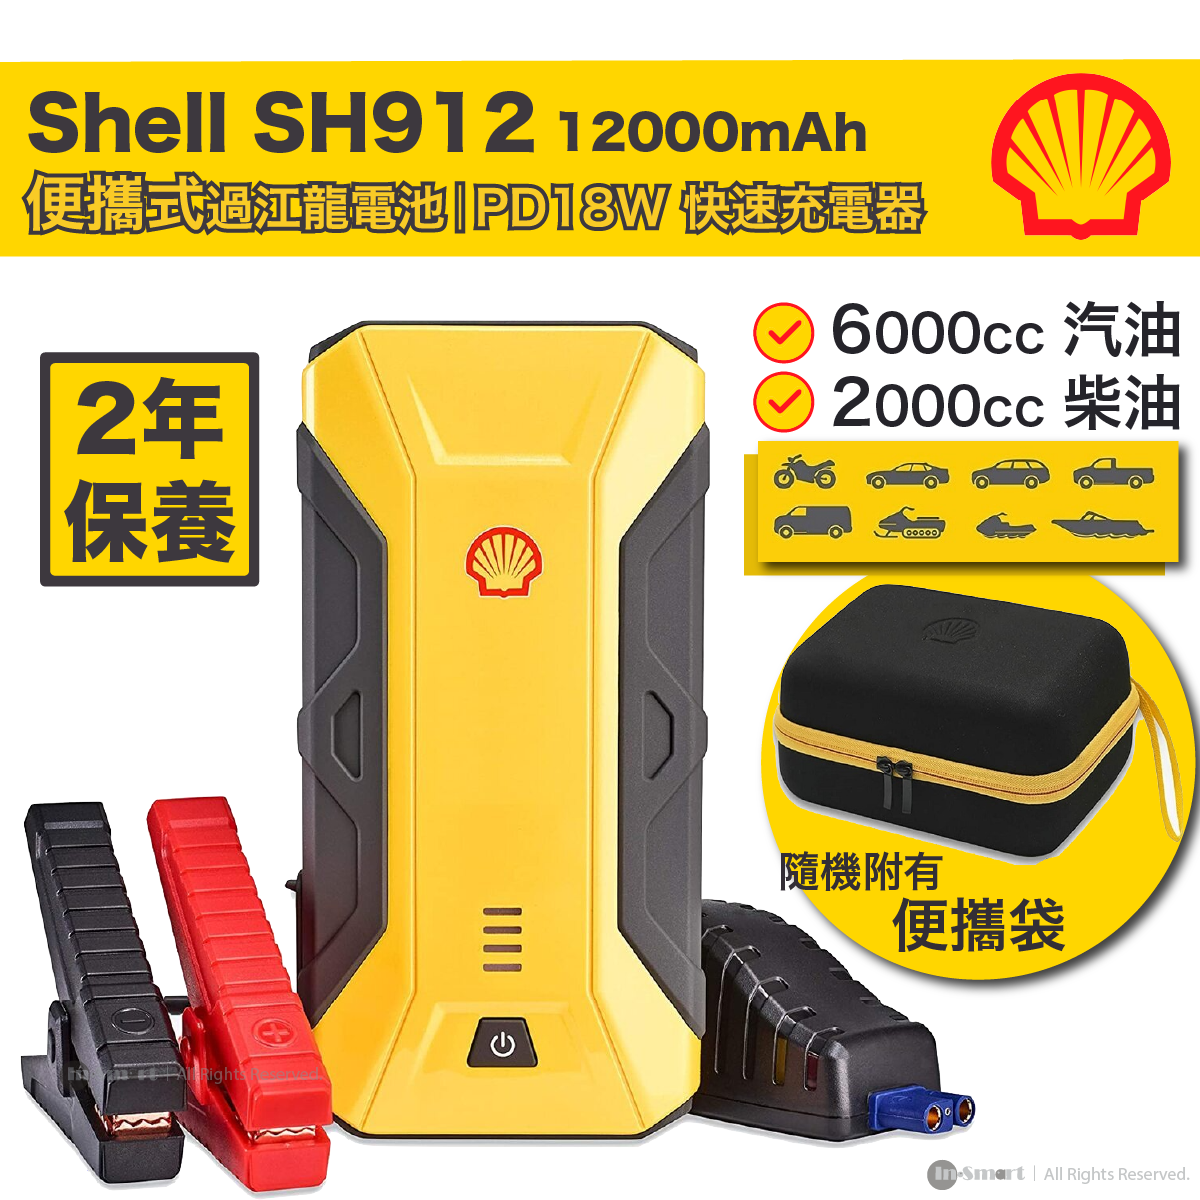 Shell, SH912 Jump Starter - PD 18W Power Bank 12000mAh